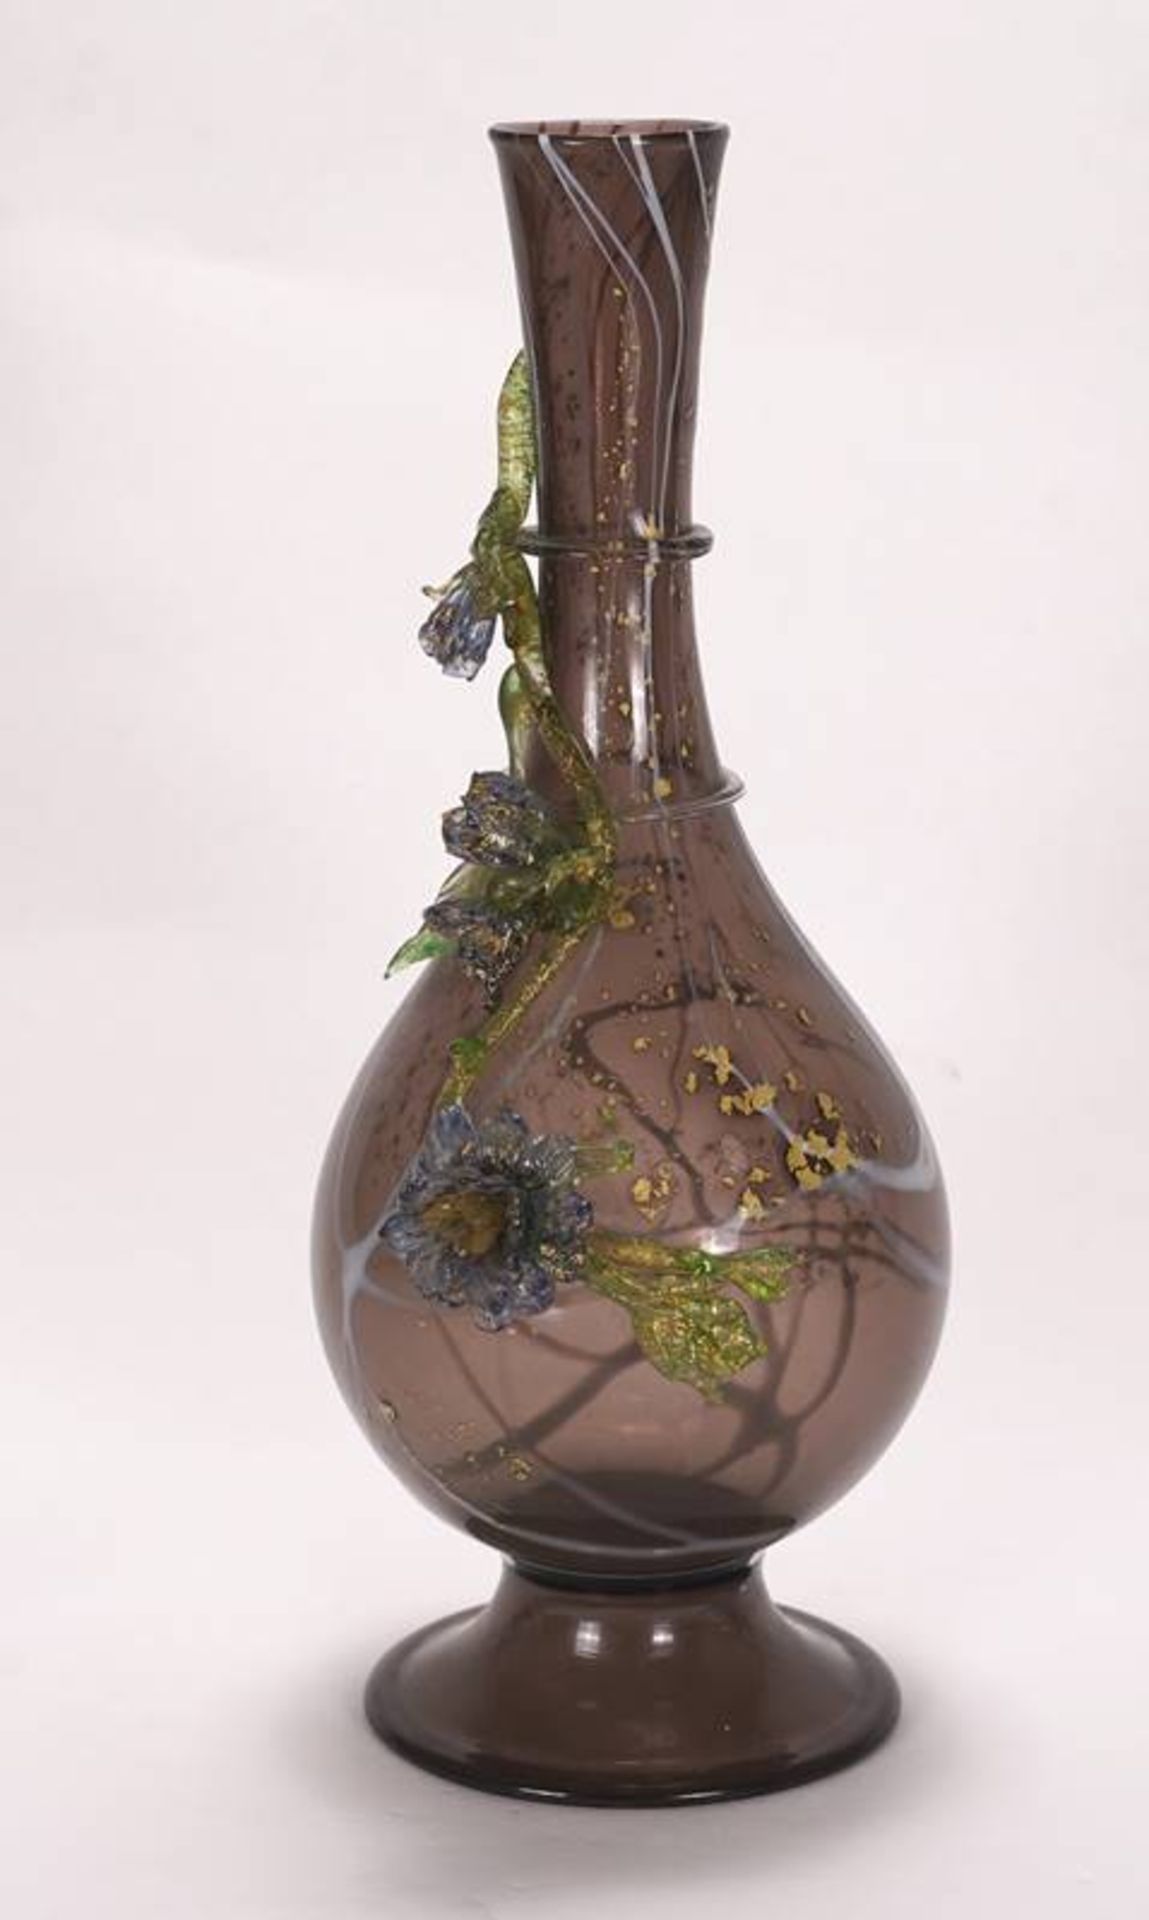 Jugendstil Vase